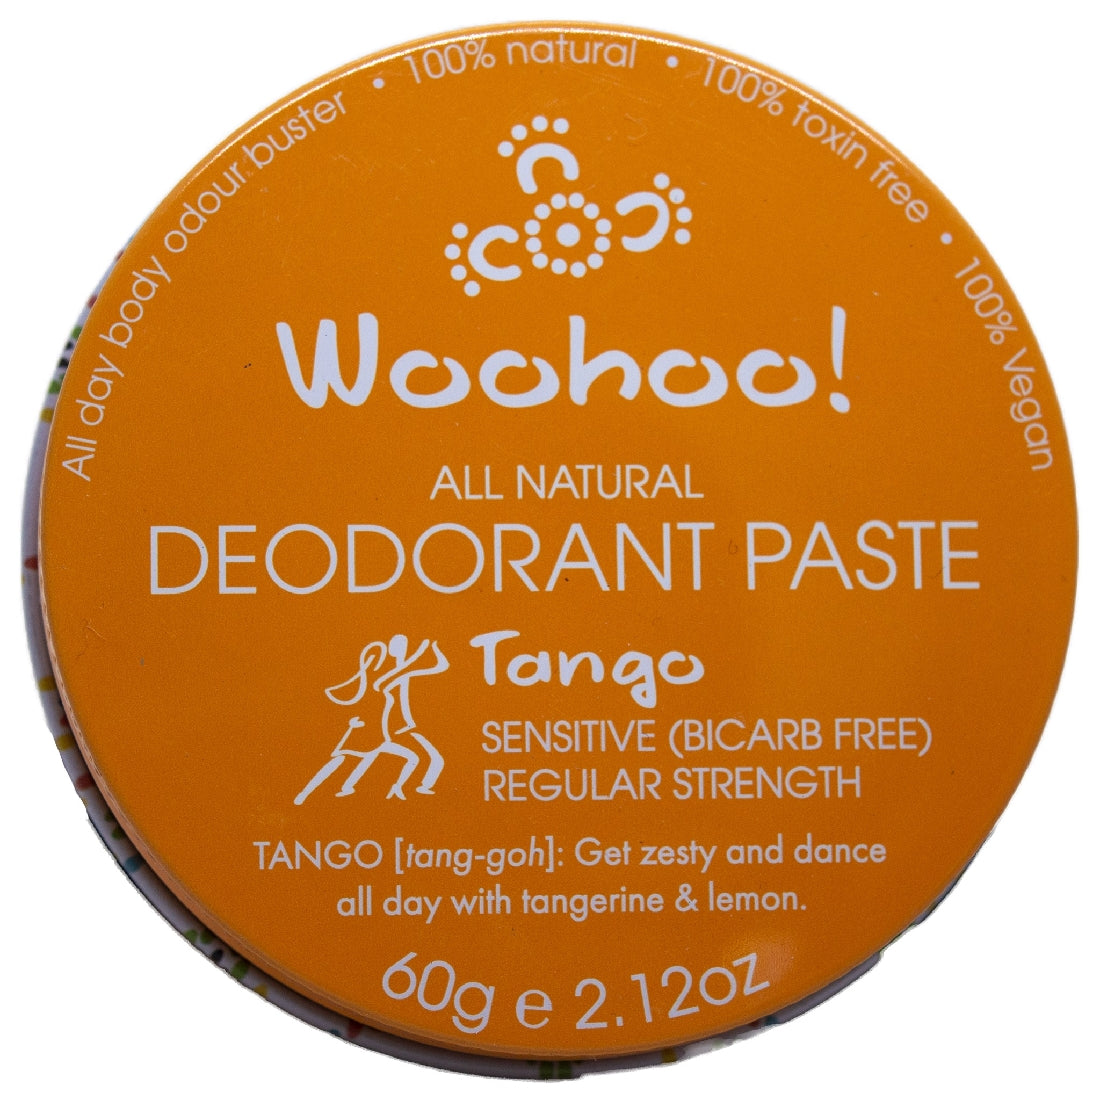 WOOHOO BODY DEODORANT PASTE - TANGO 60G